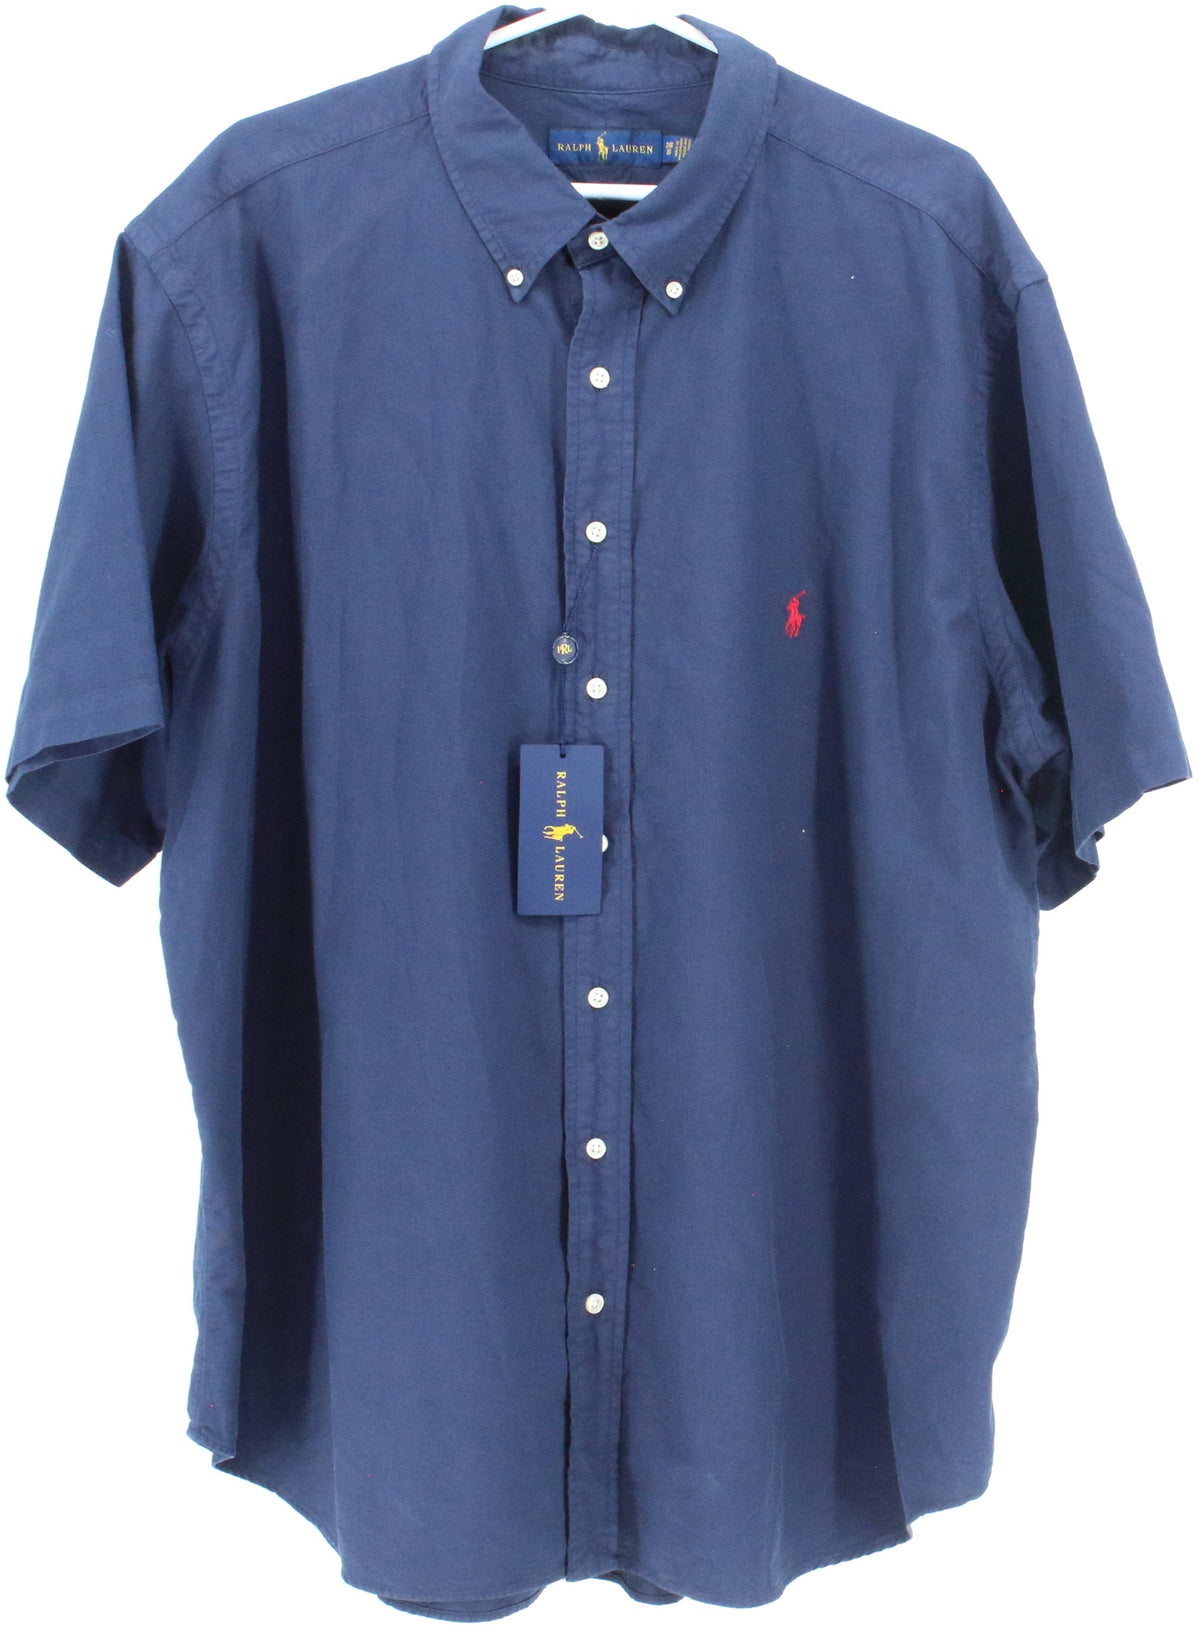 Ralph Lauren Navy Blue Short Sleeve Shirt